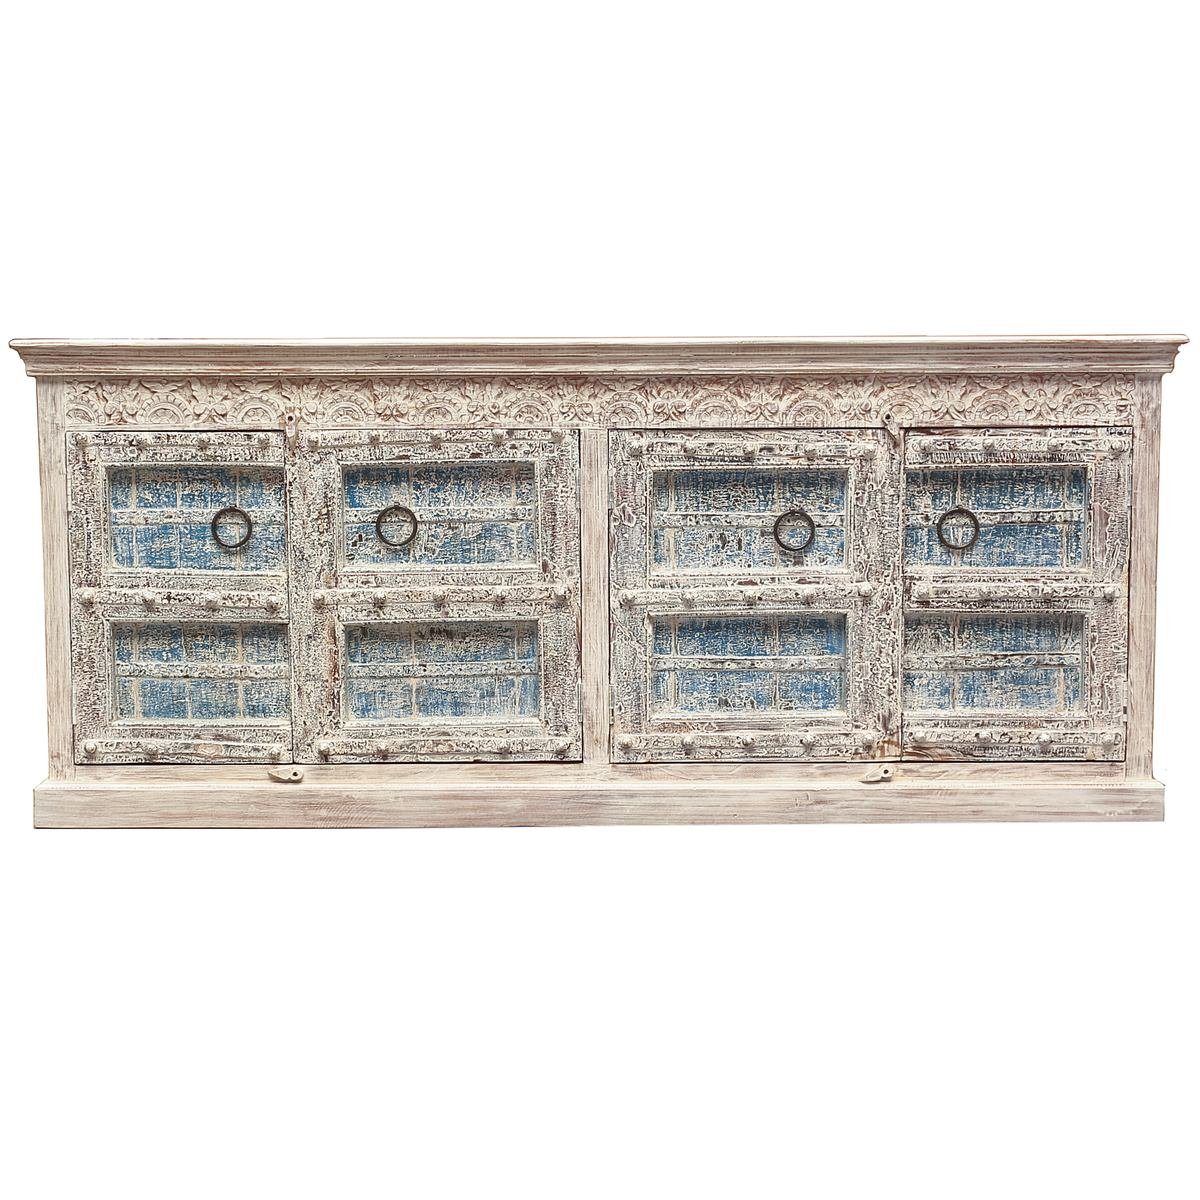 Oriental Galerie Unterschrank Weiß Blauwash Sideboard Tejas Indien 222 cm Handarbeit